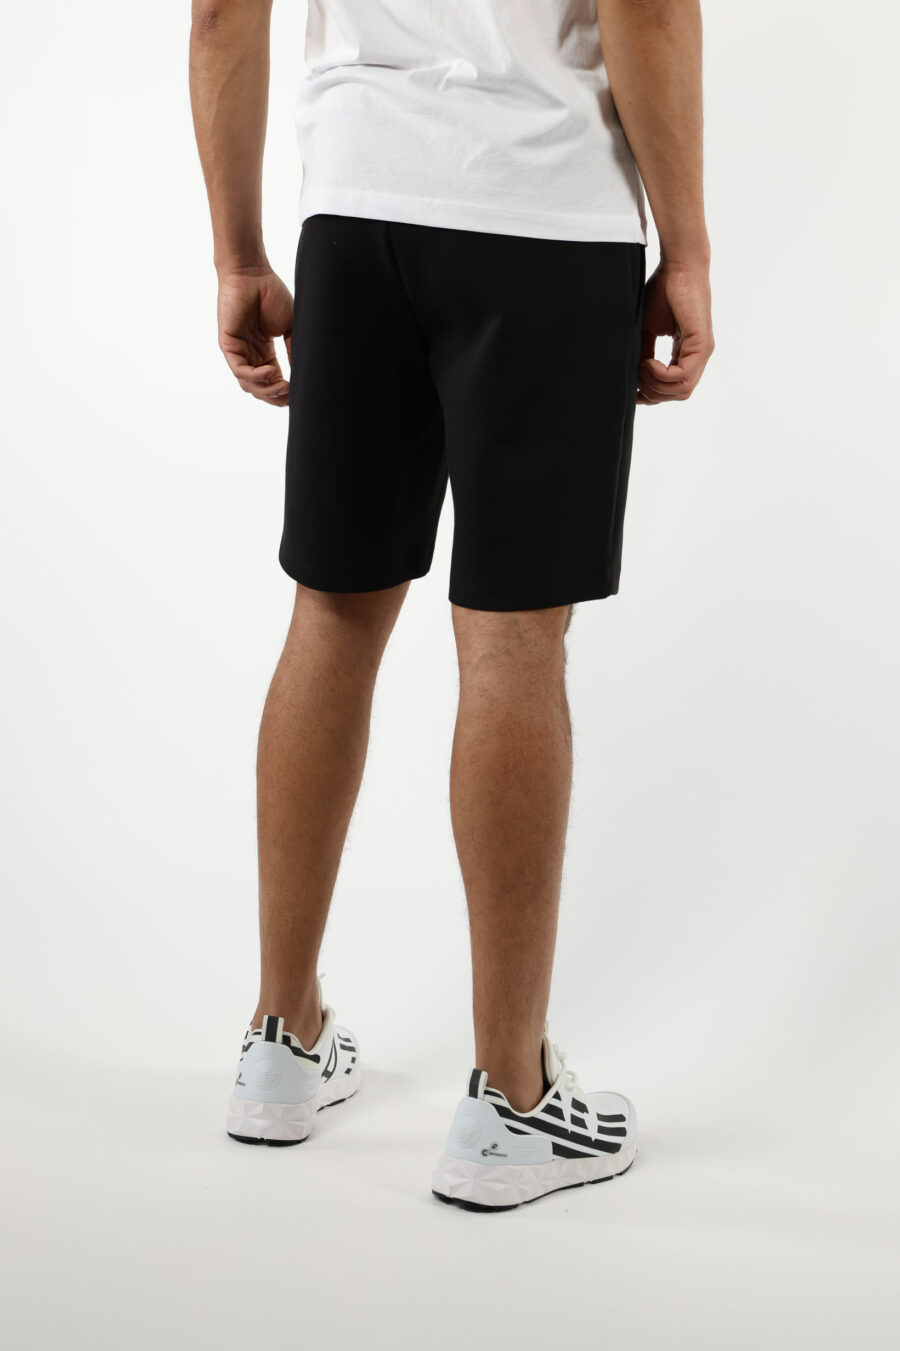 Pantalón de chándal negro corto con minilogo "lux identity" blanco en placa negro - 110861